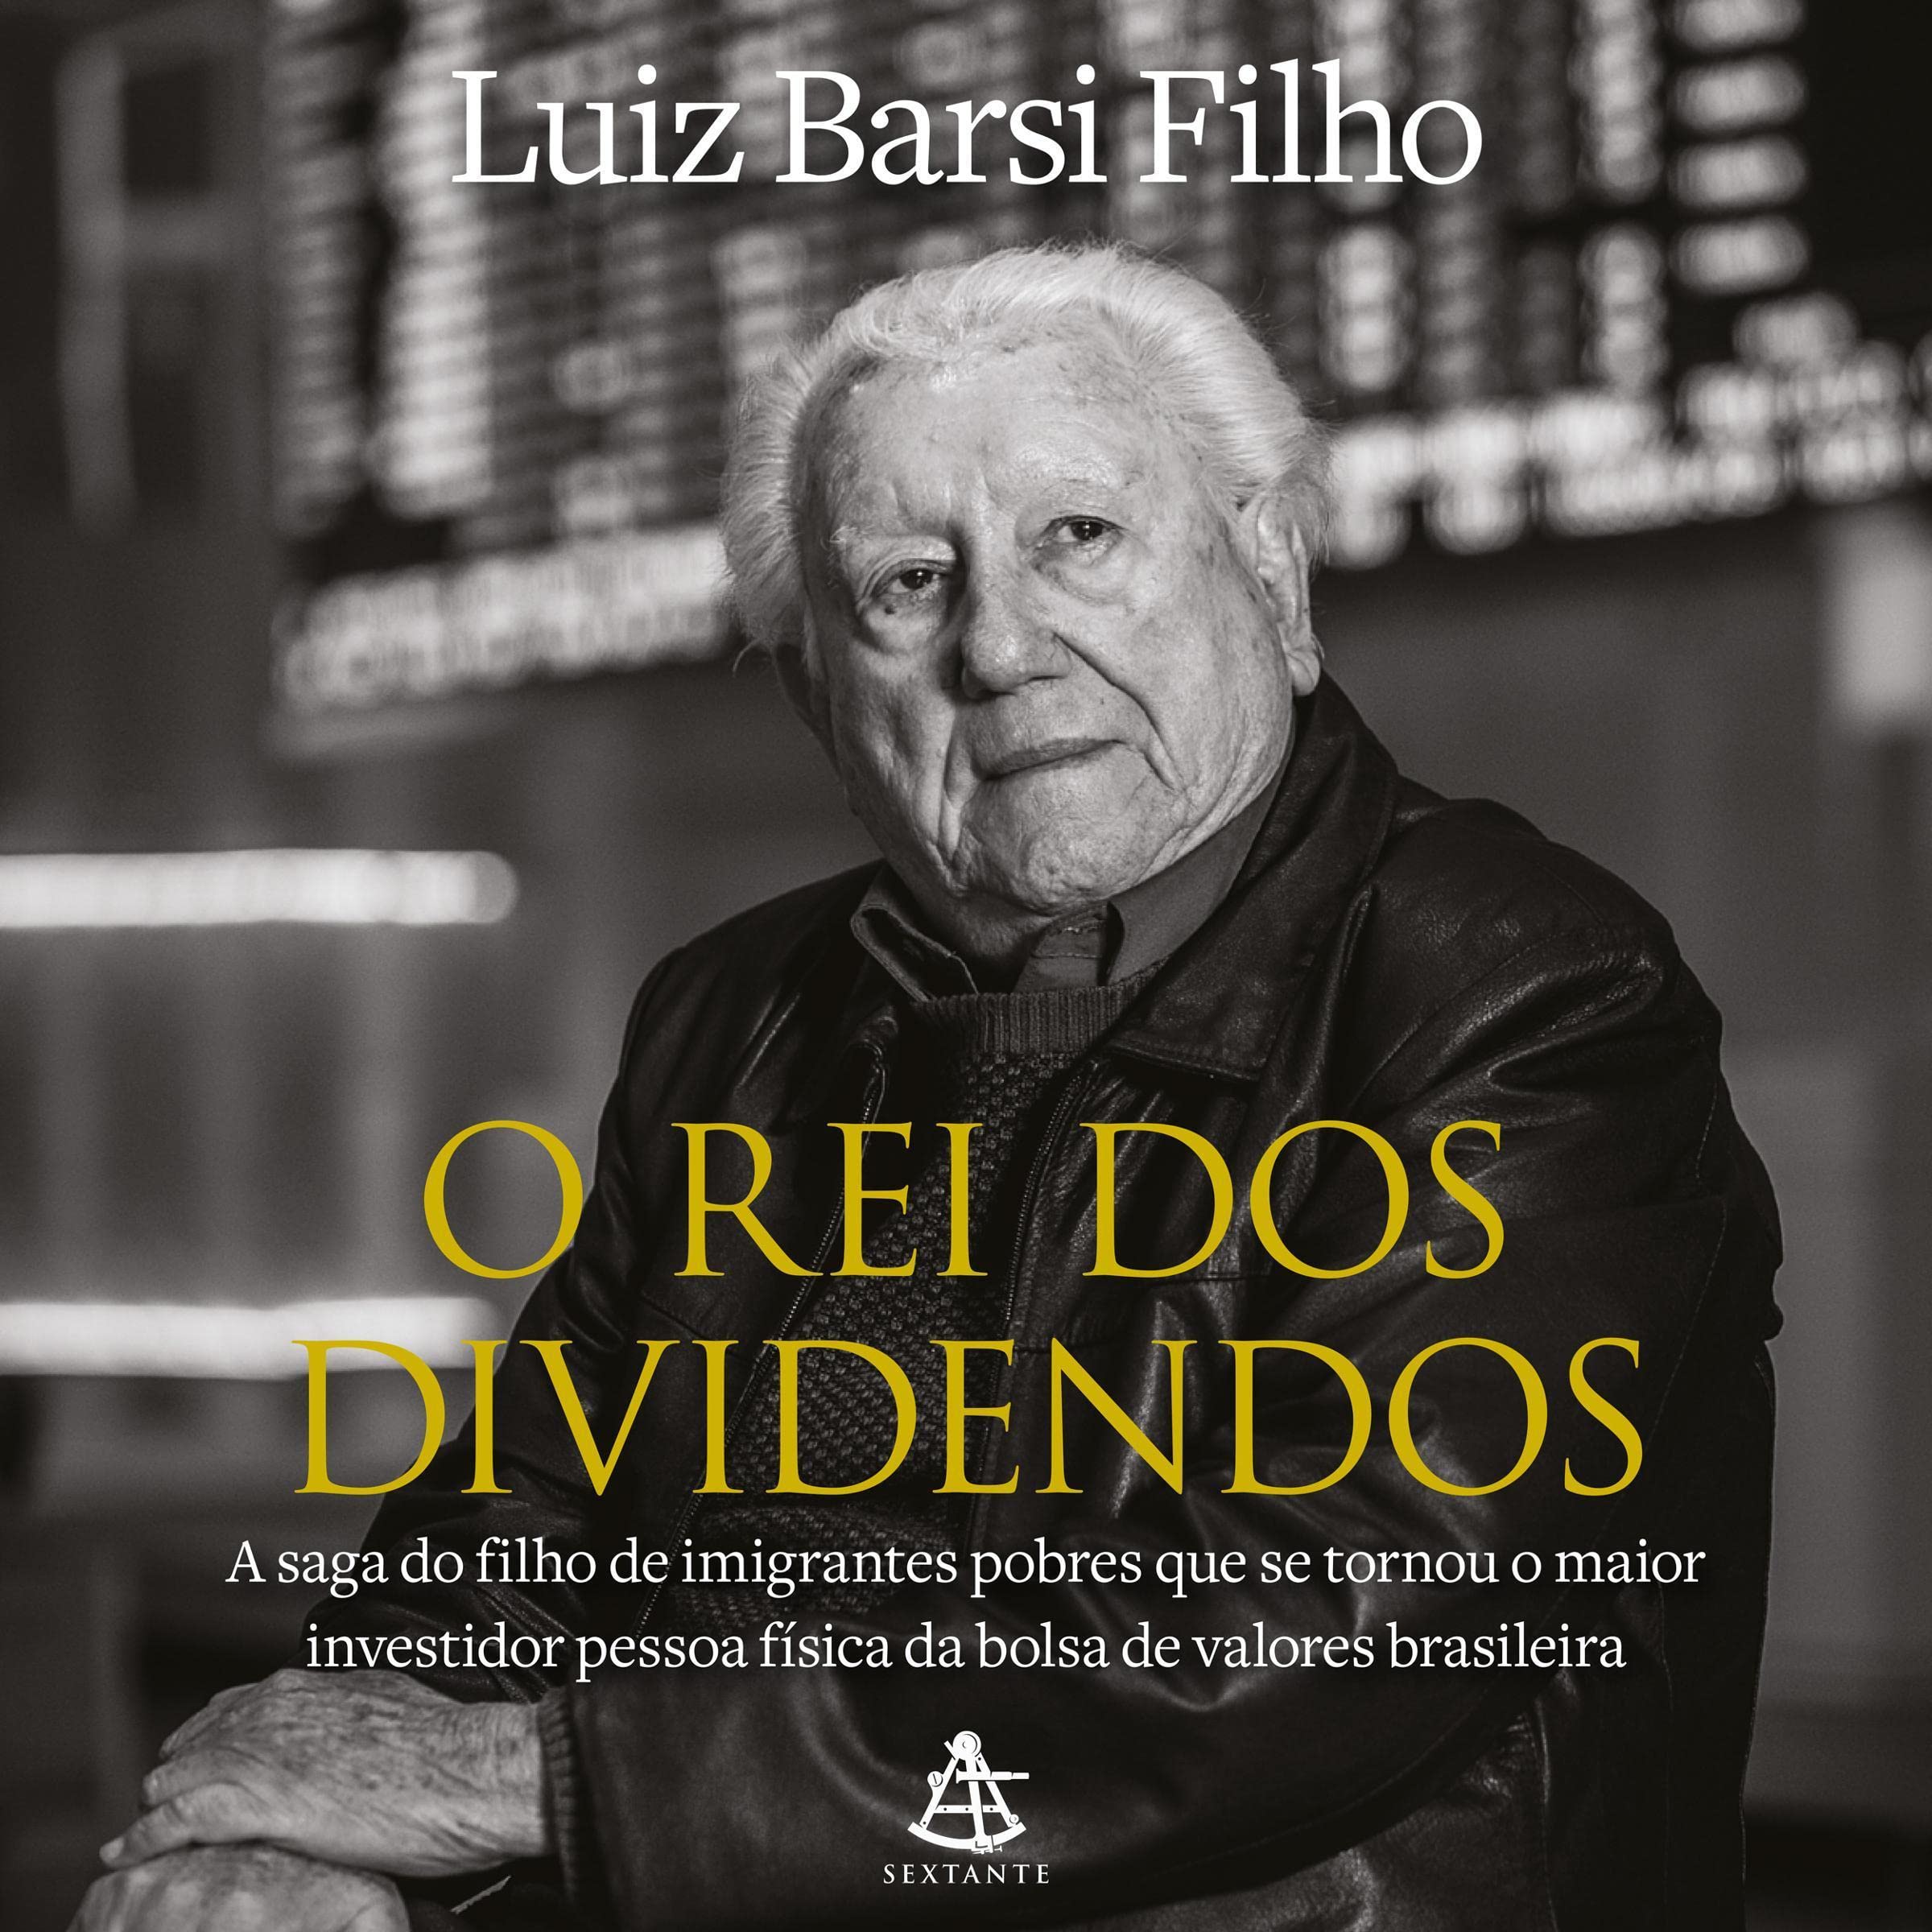 O rei dos dividendos: A saga do filho de imigrantes pobres que se tornou o maior investidor pessoa física da bolsa de valores brasileira.